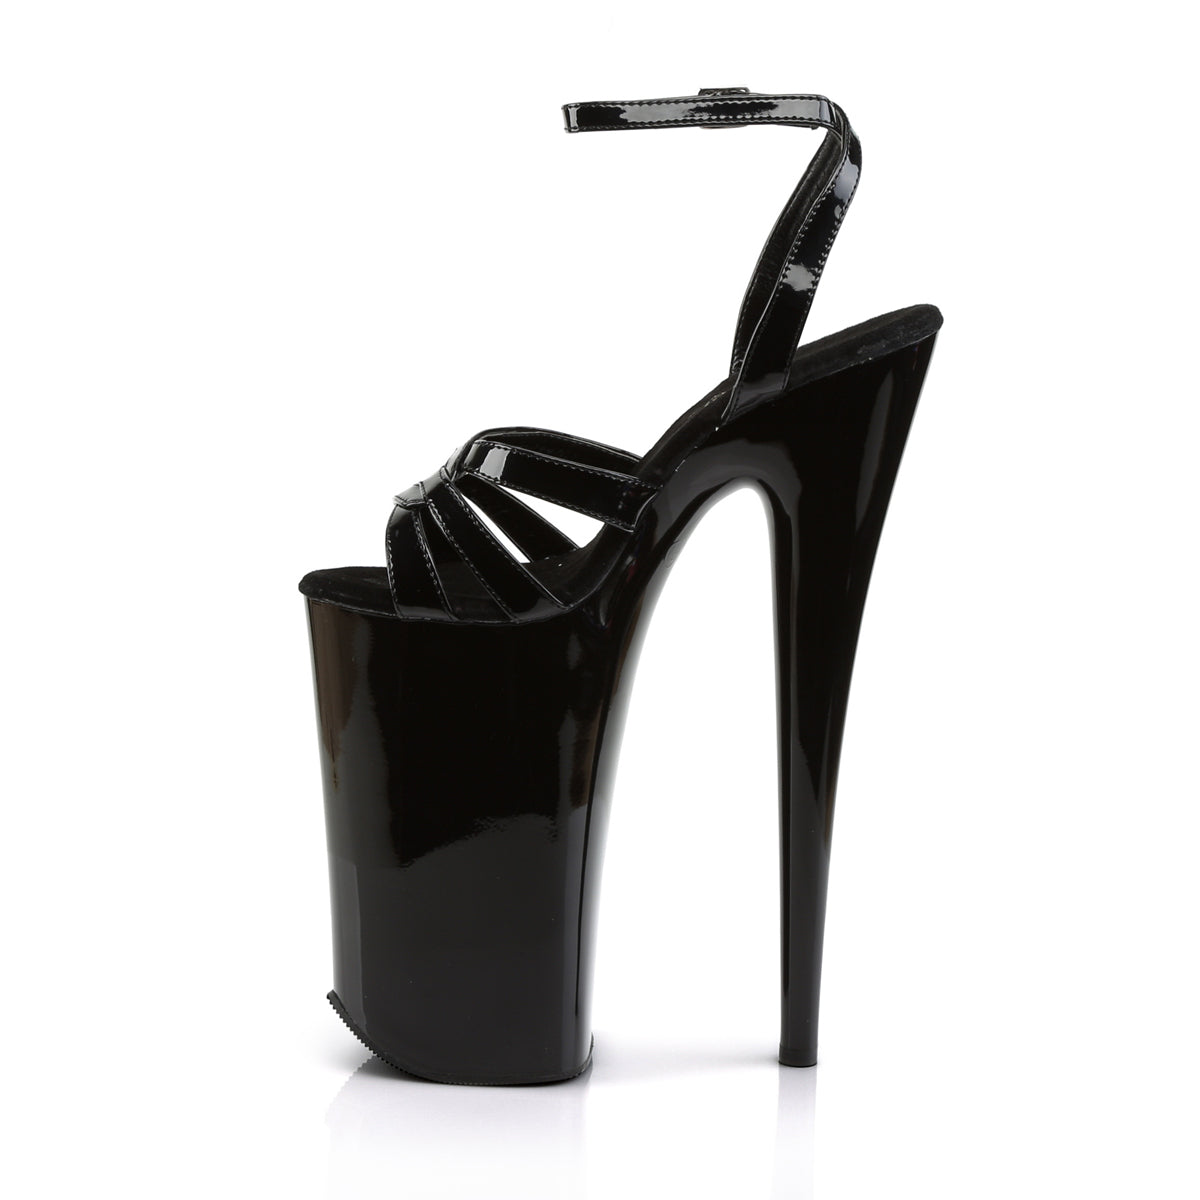 BEYOND-012 Pleaser Black Platform Shoes [Extreme High Heels]